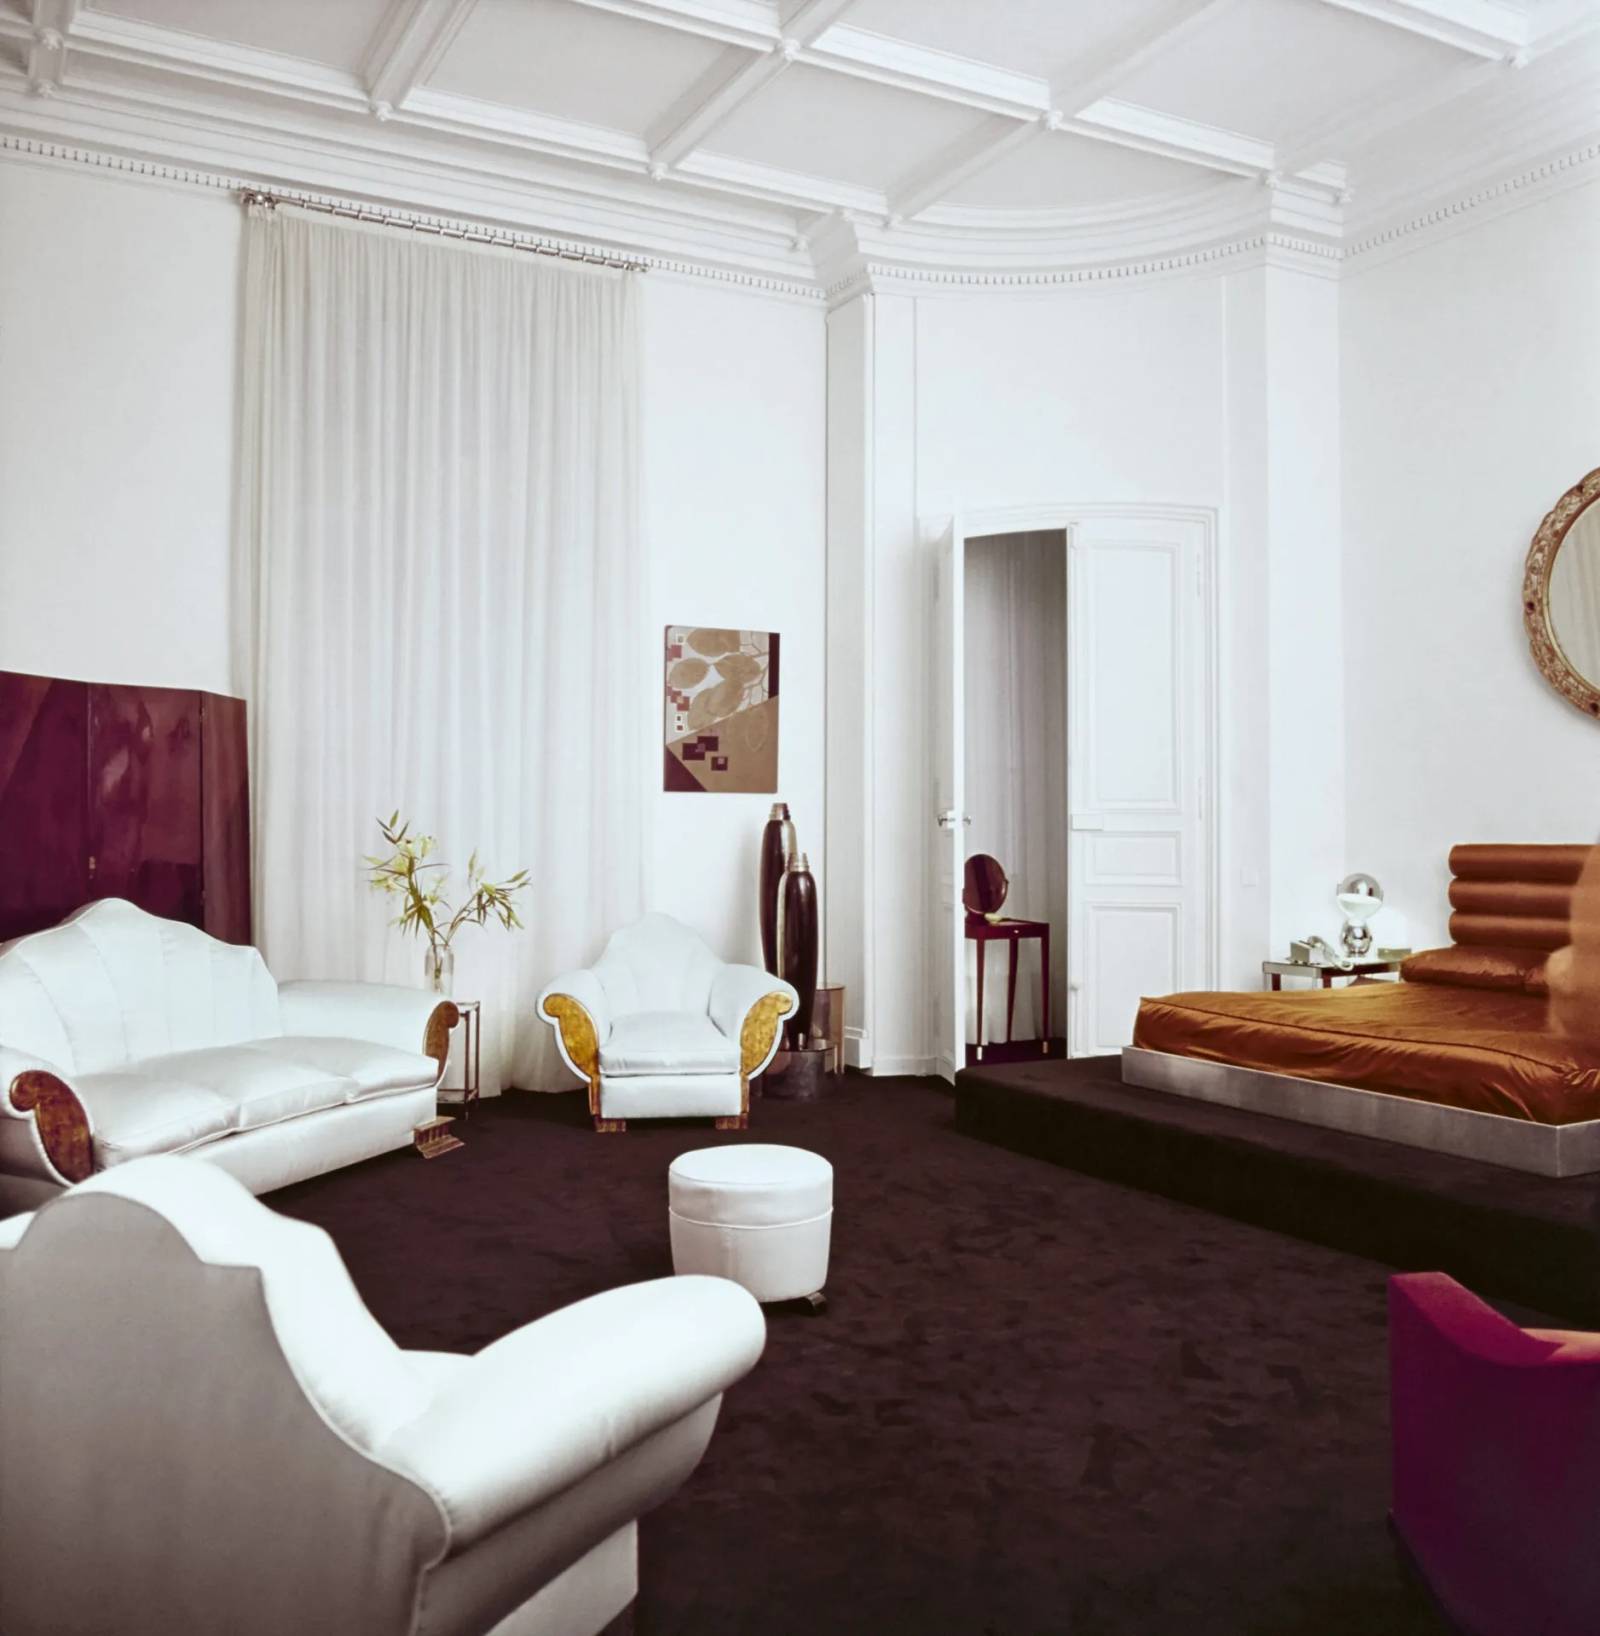 Satynowe fotele Shell i kanapa w kolorze kości słoniowej pochodzą z domu, którego wystrój został zaprojektowany w latach 30. XX wieku przez Elsie de Wolfe, jedną z osób w największym stopniu inspirujących Karla Lagerfelda przy projektowaniu wnętrz. 